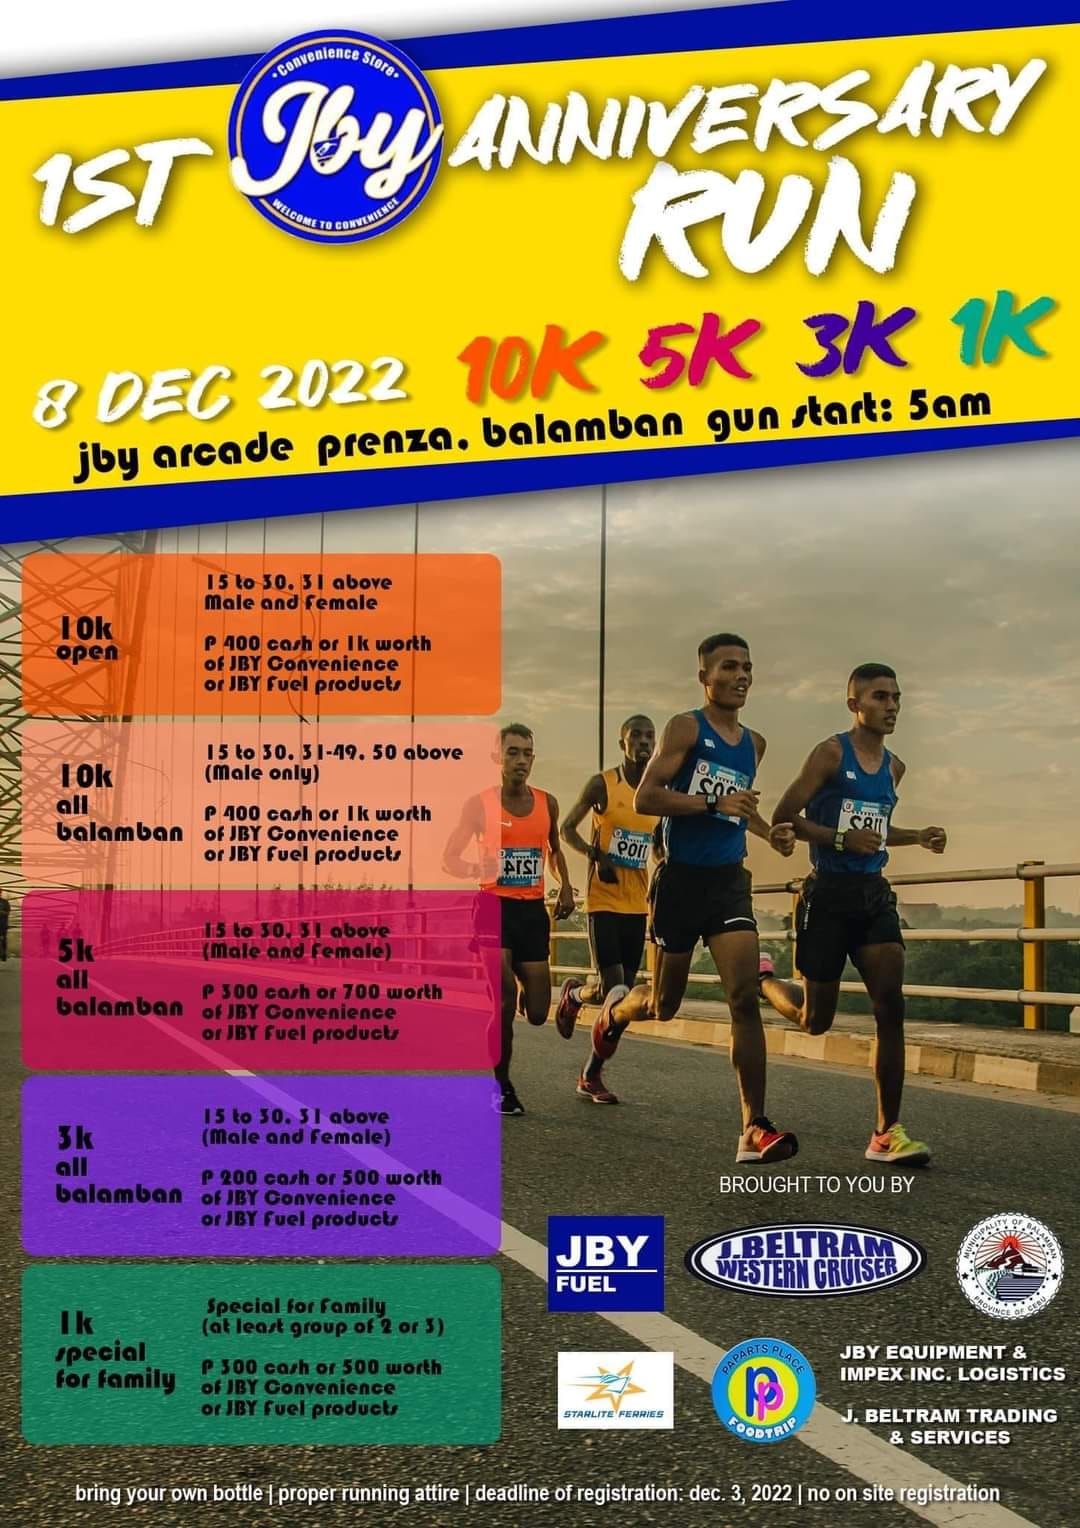 Takbo.ph Running and Marathons in the Philippines